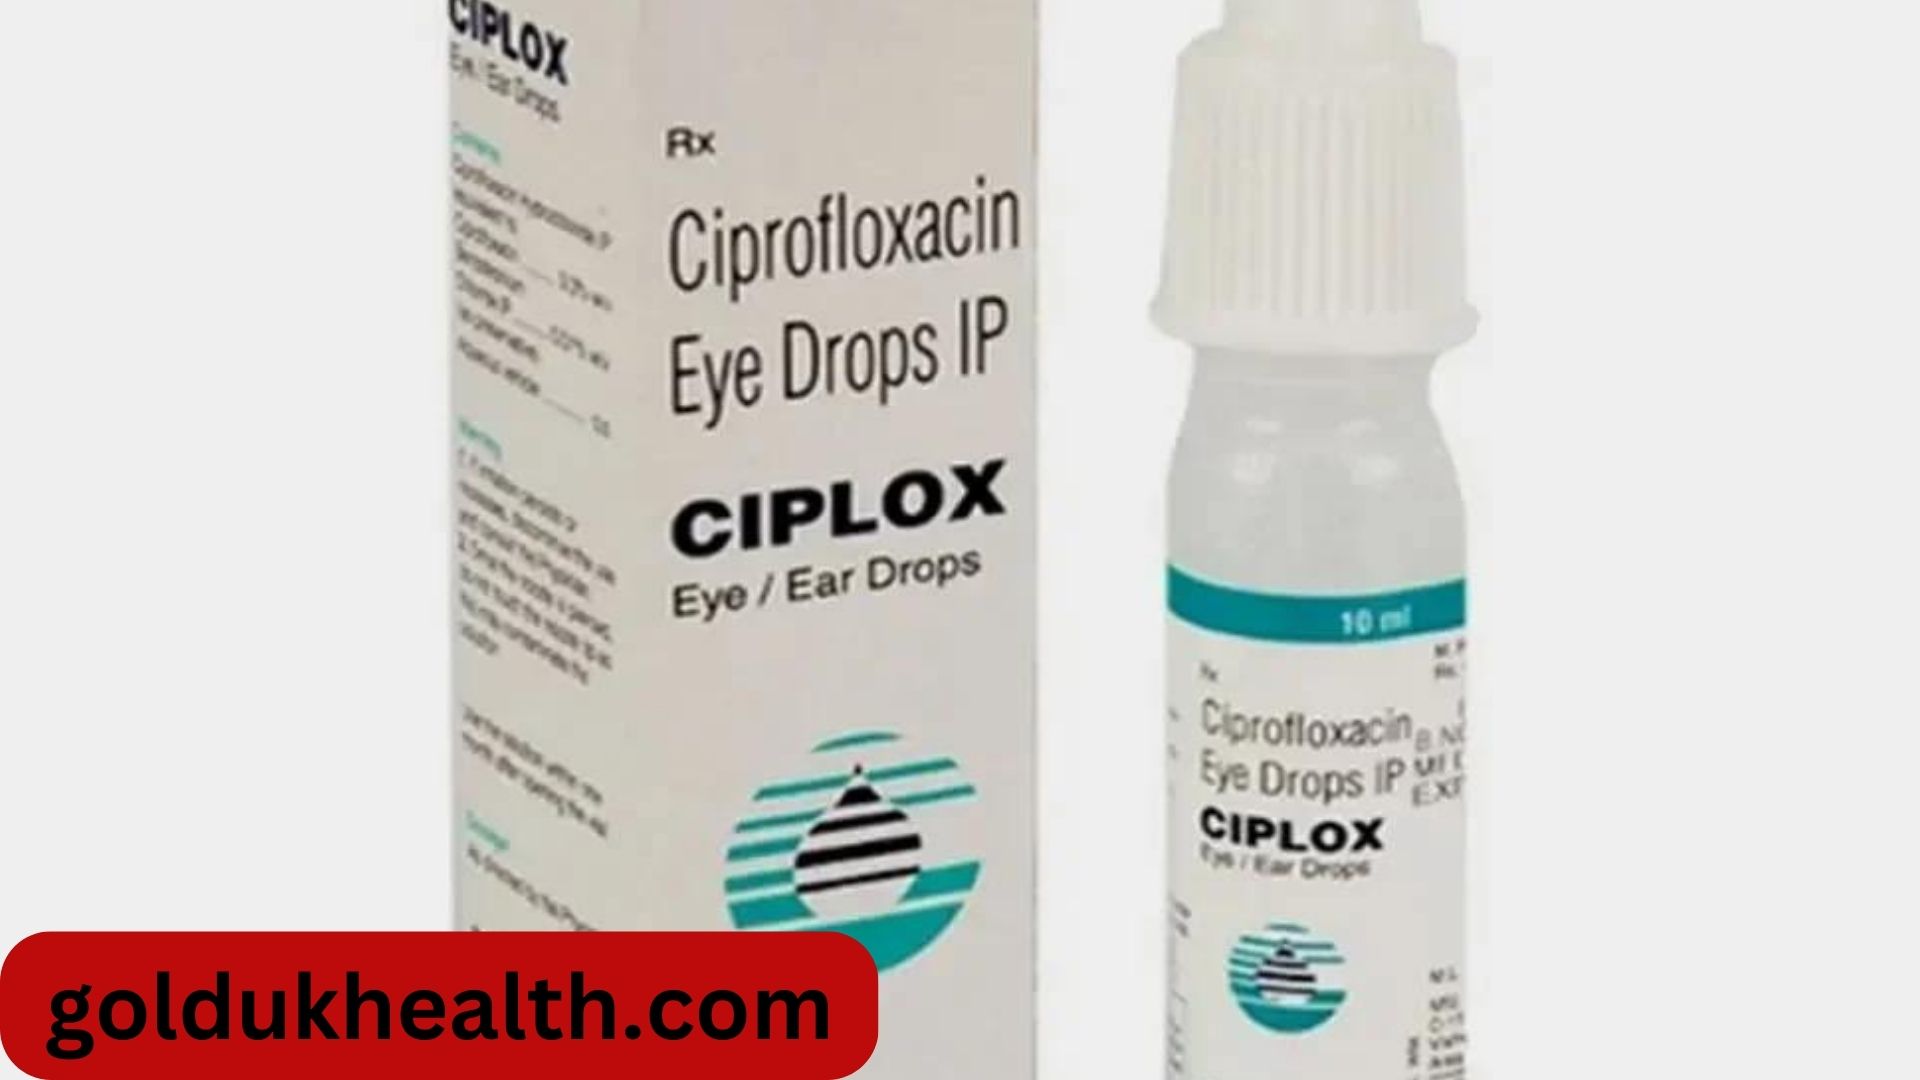 Ciplox Eye Drops